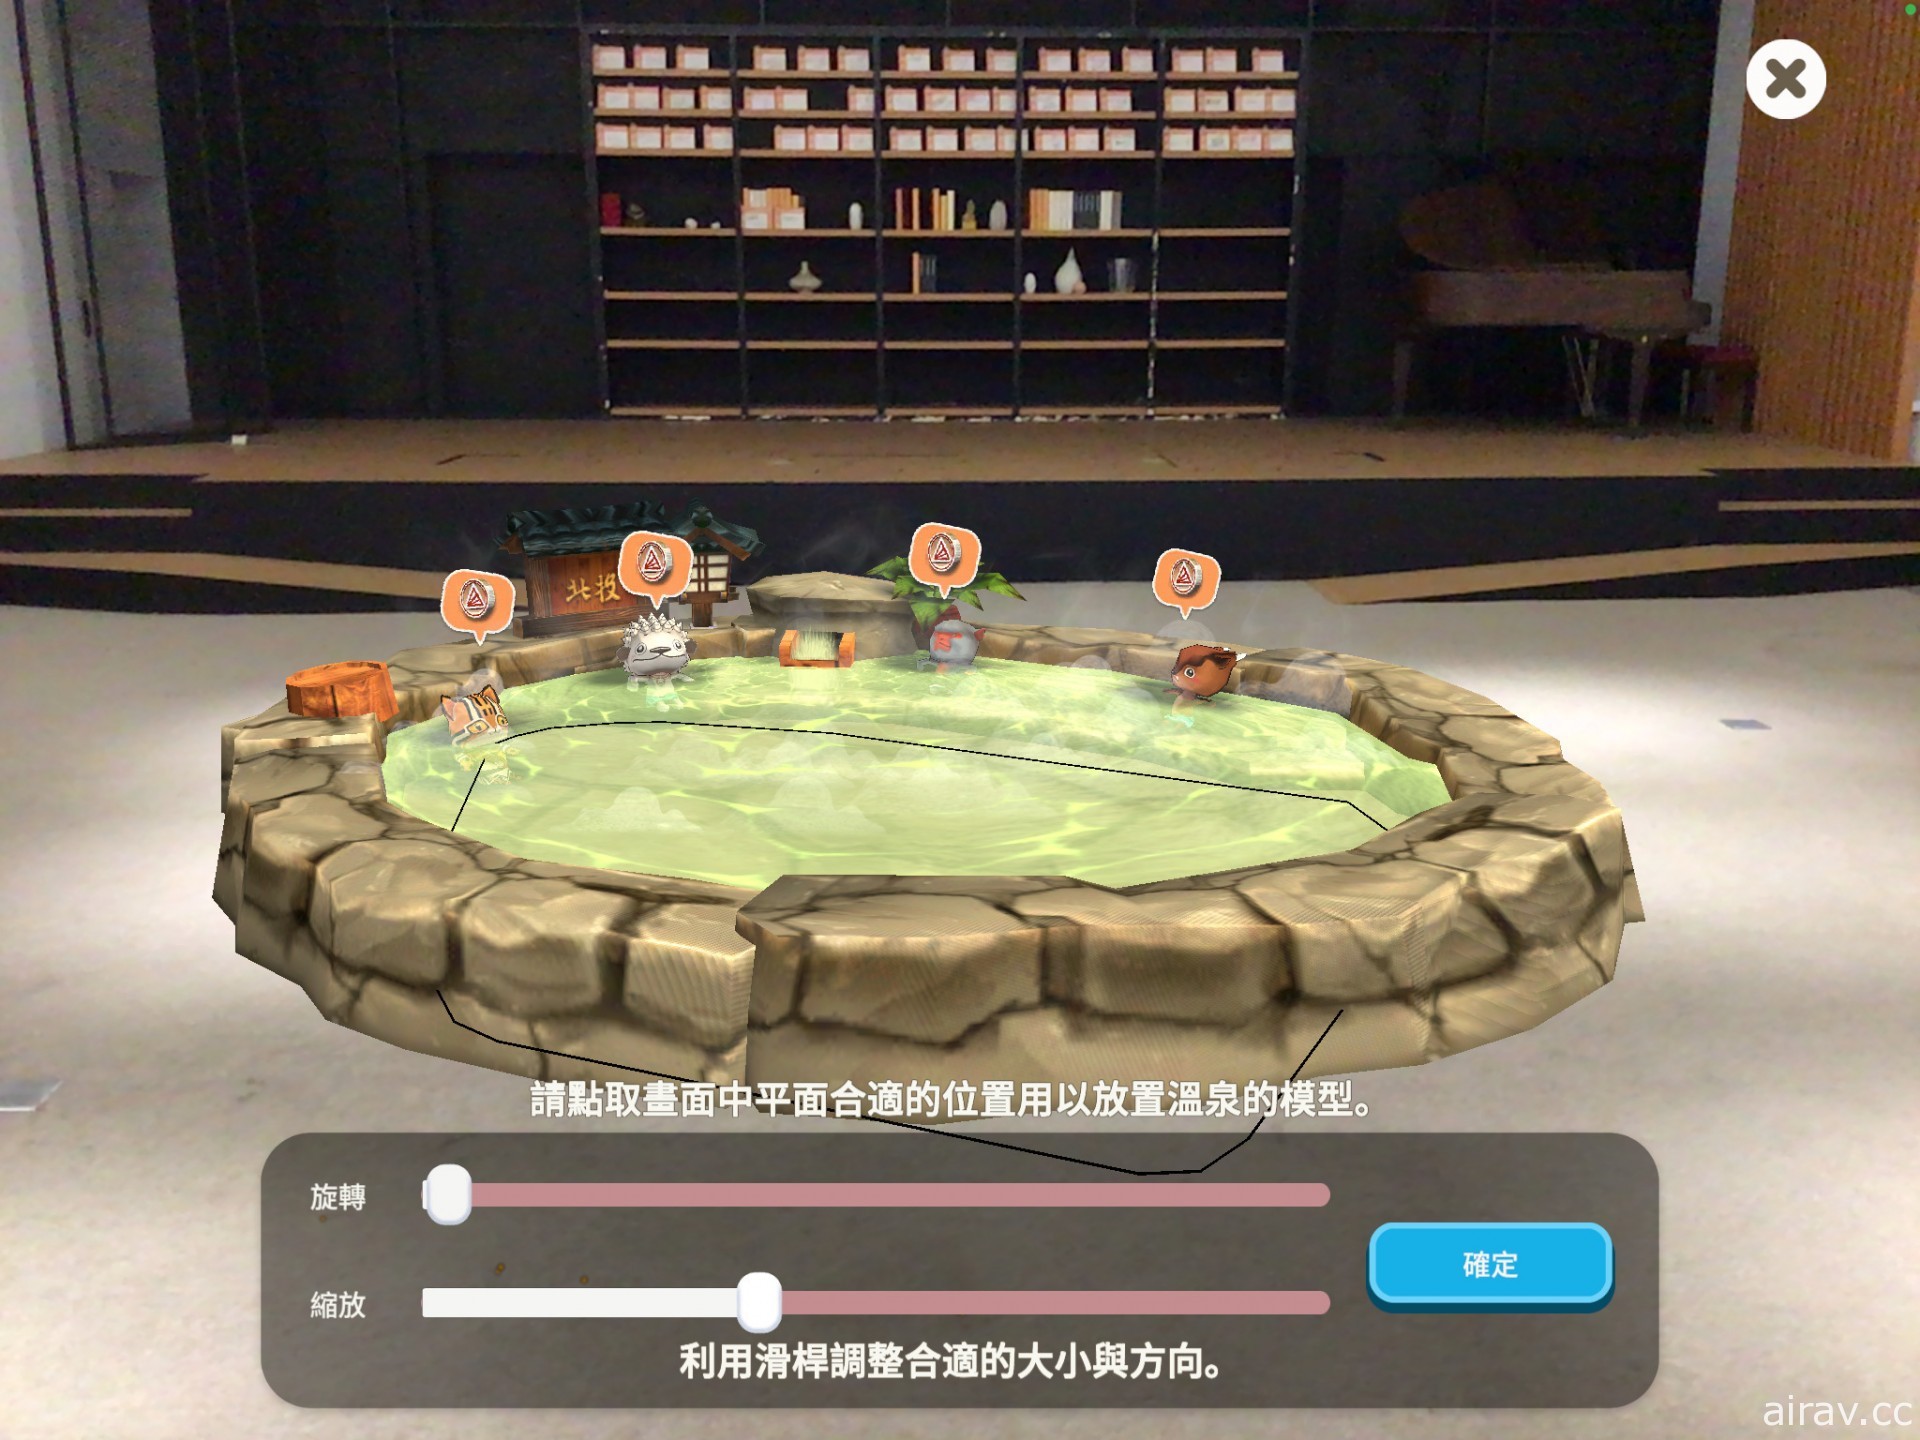 溫泉主題放置經營遊戲《映泉鄉》開放下載 融入多項台灣特色文化